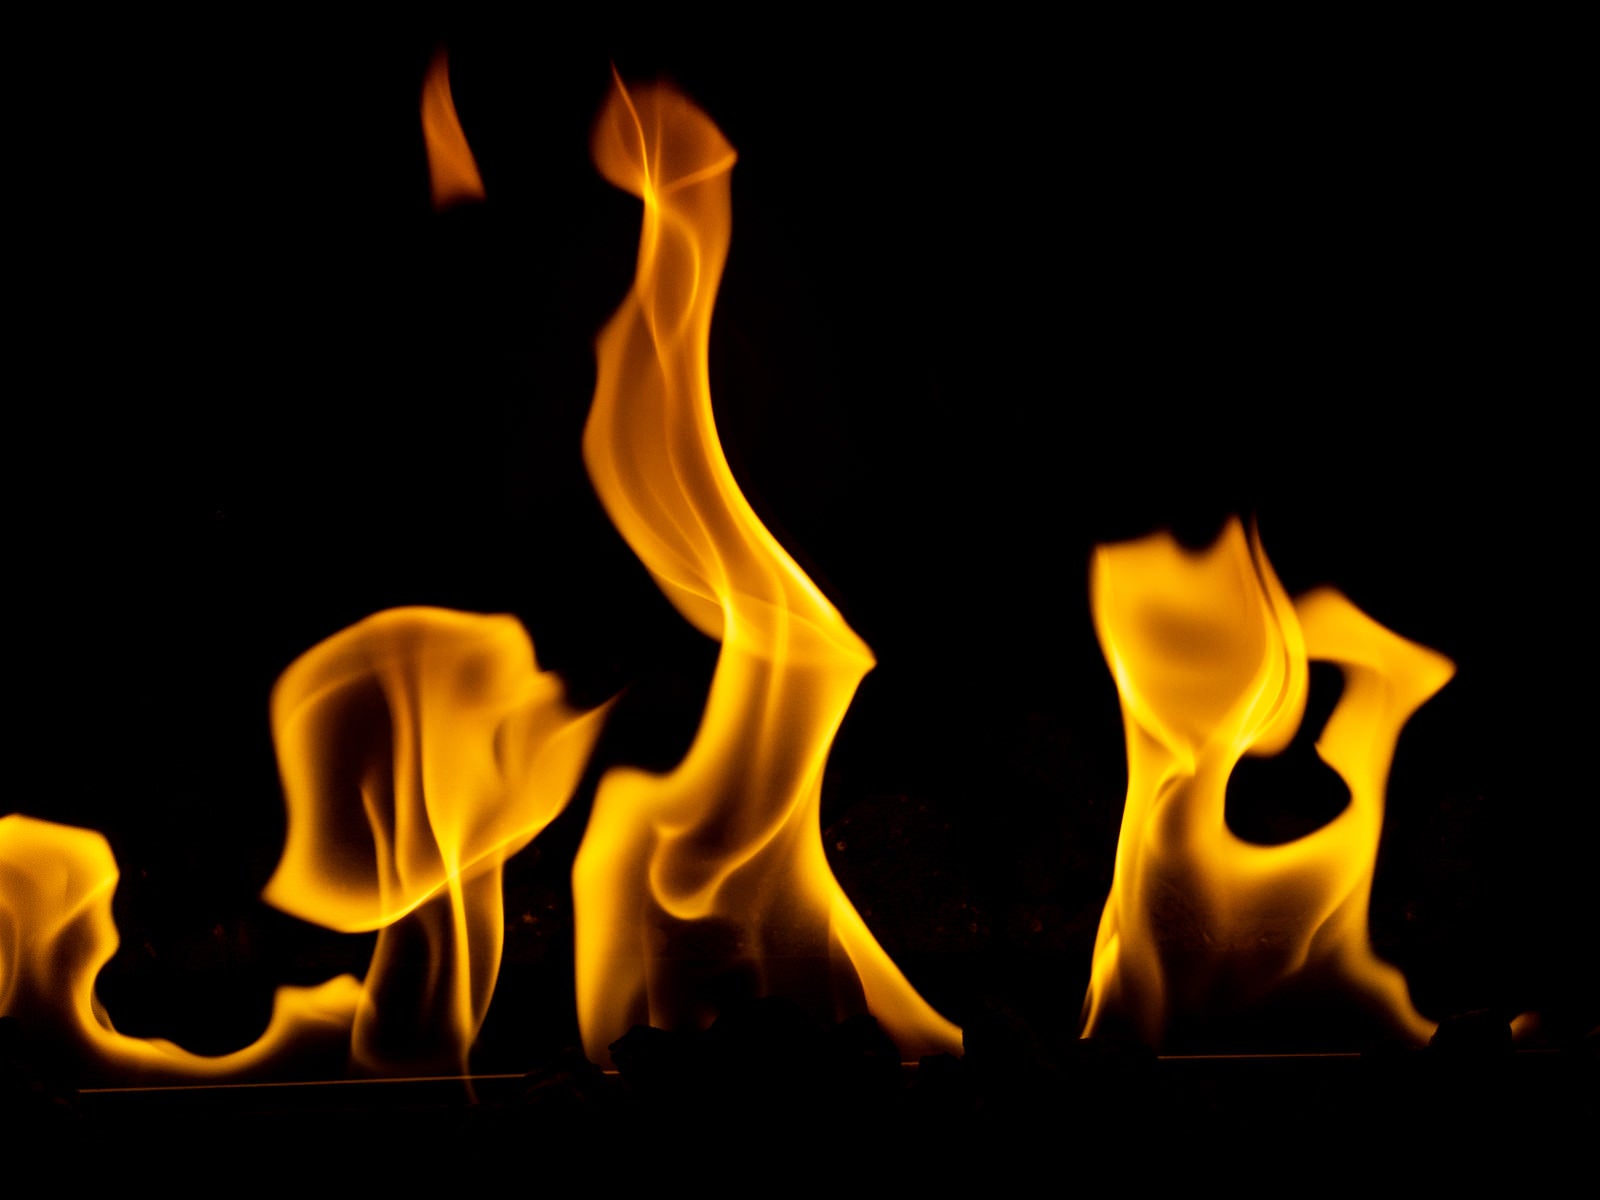 「ラメラと炎が燃える暖炉の様子」の写真